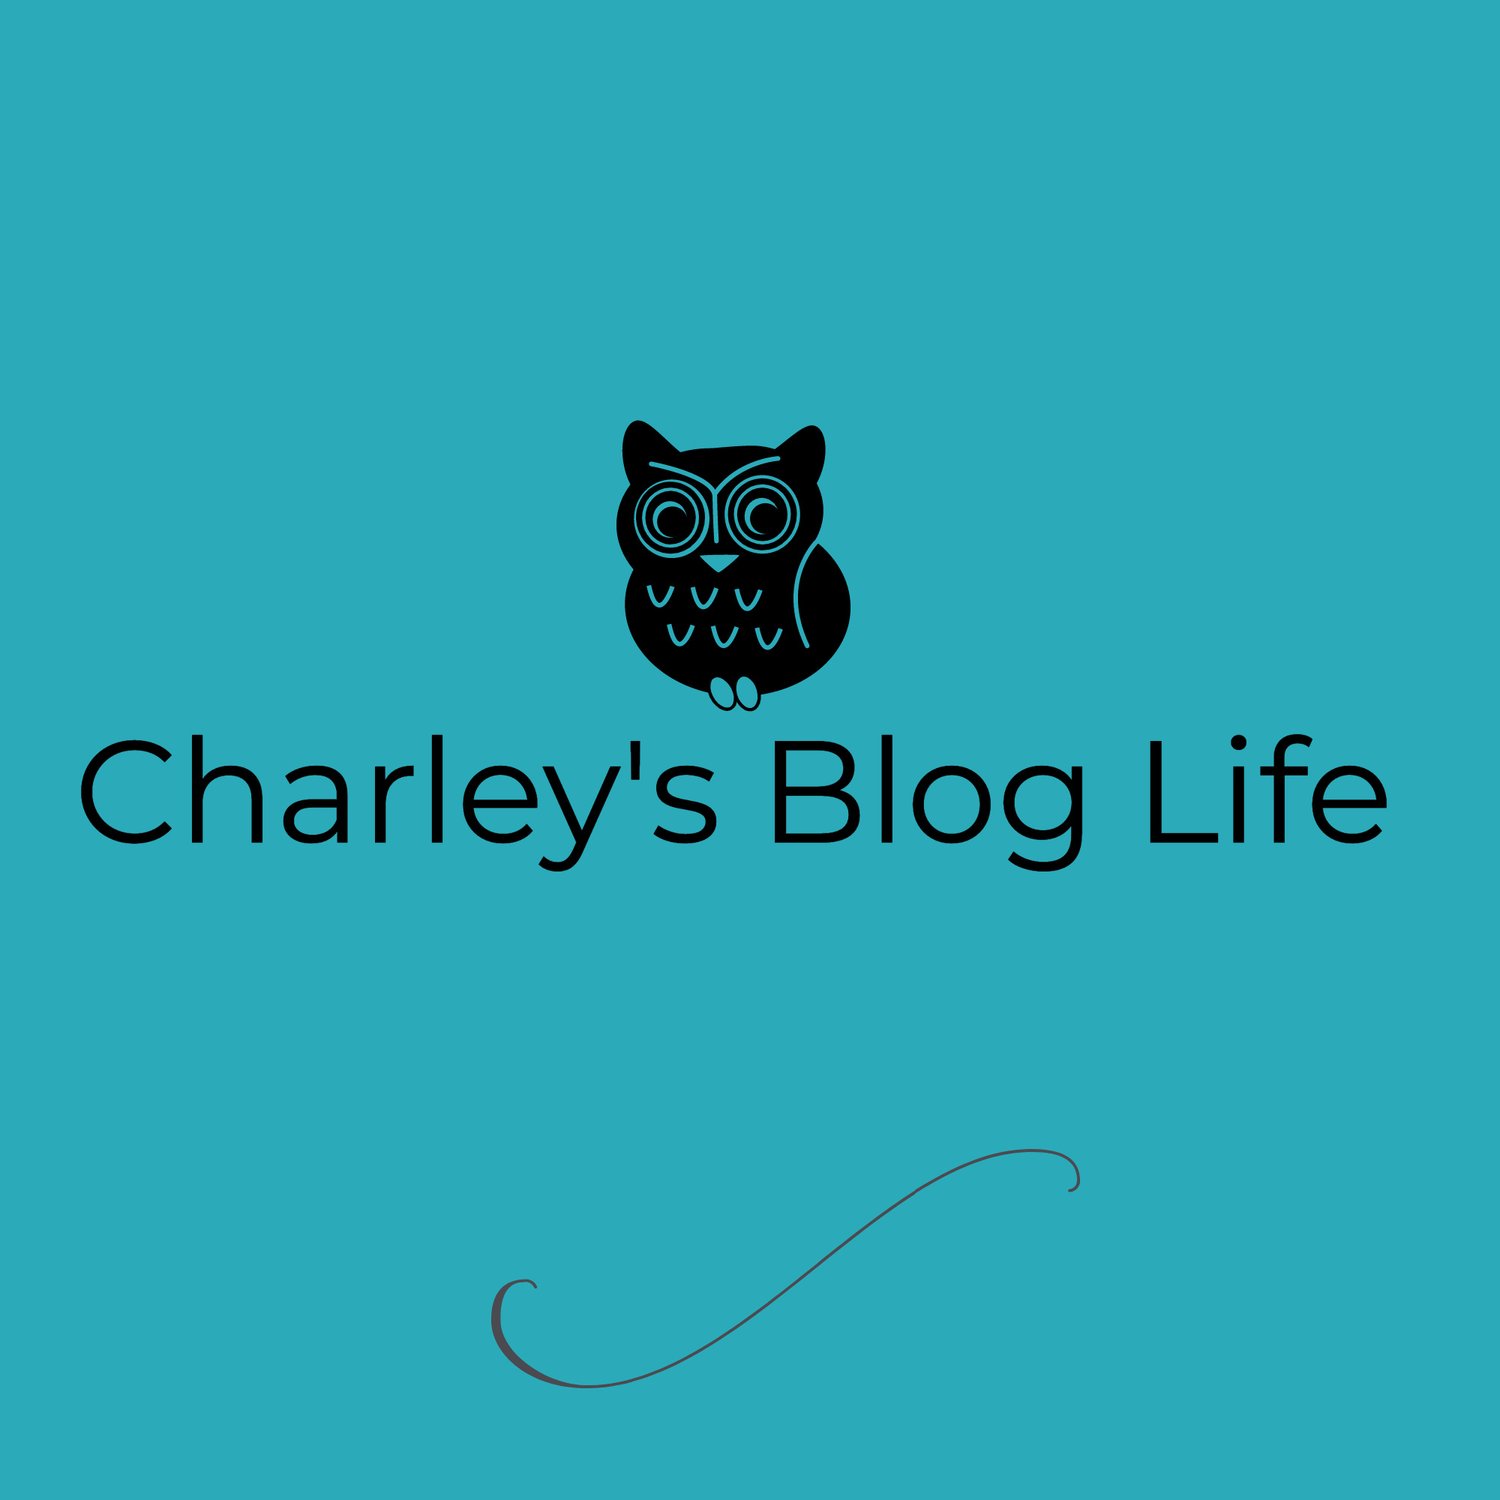 Charley's Blog Life